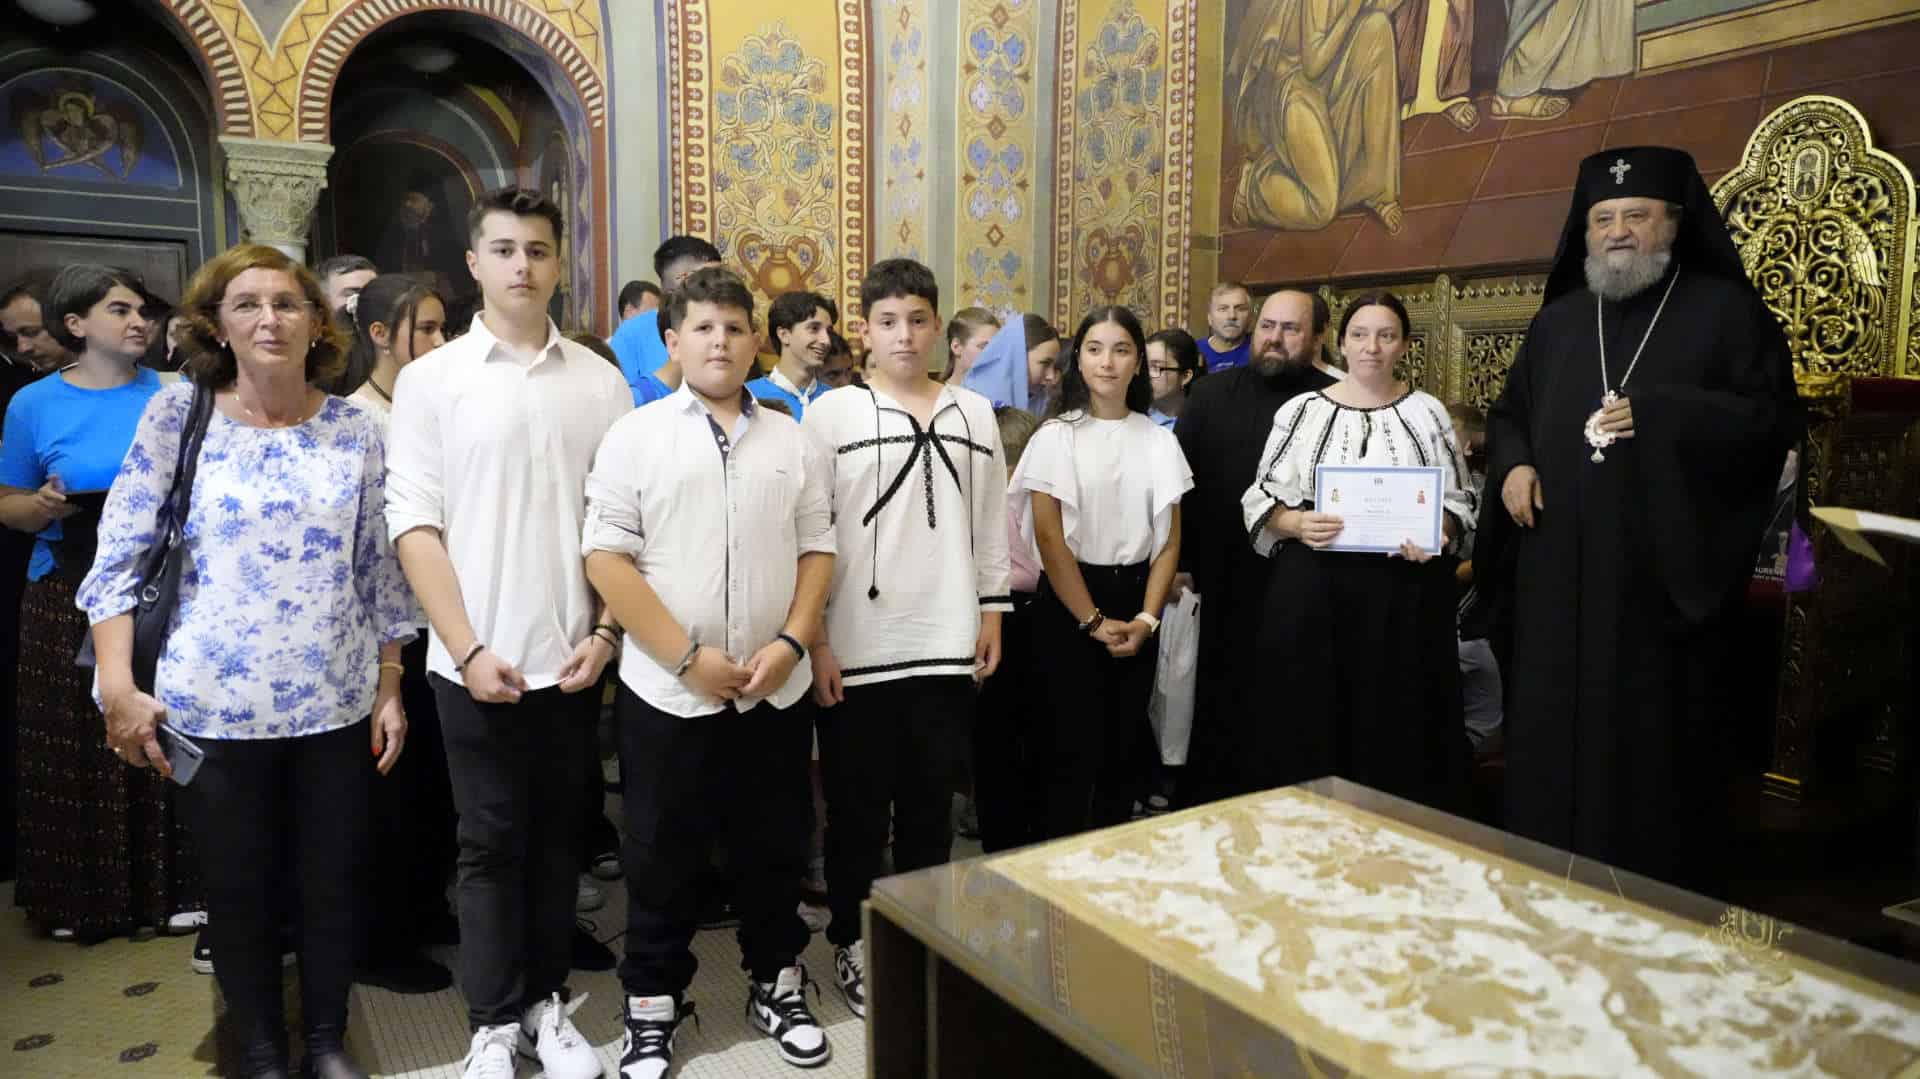 zeci de elevi sibieni premiați de mitropolia ardealului cu cărți și diplome pentru rezultate foarte bune la olimpiada de religie (foto)